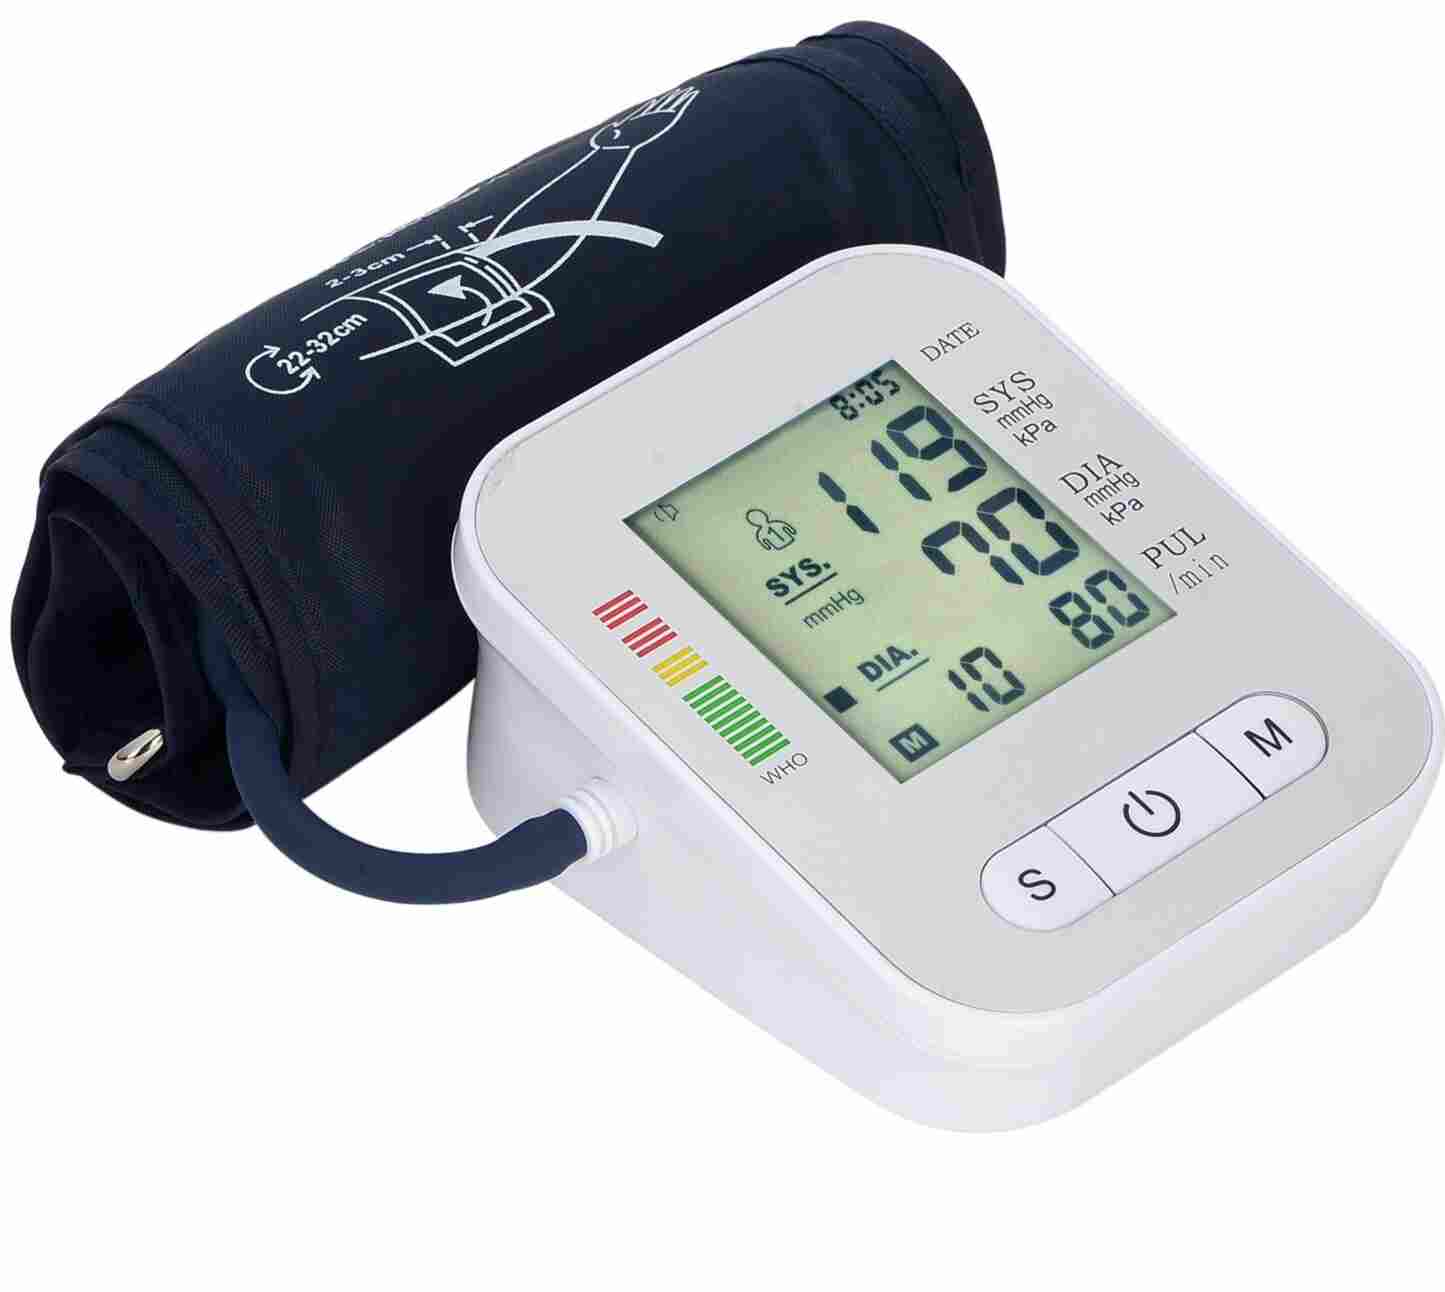  RAK289electronic blood pressure monitor